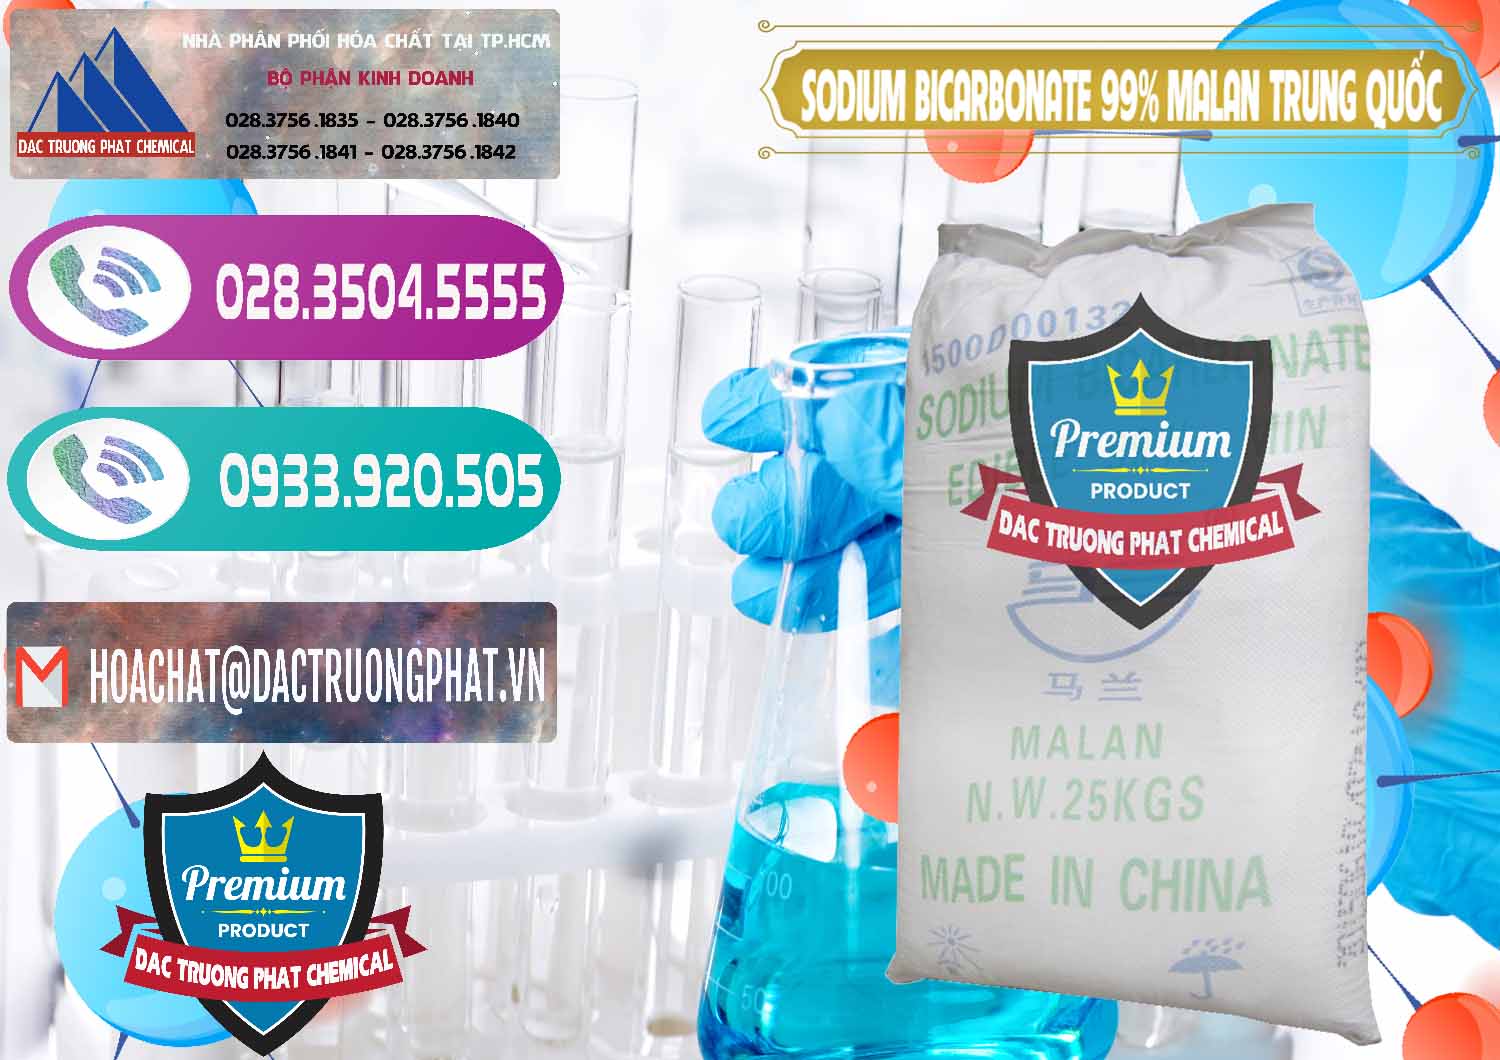 Chuyên bán _ cung cấp Sodium Bicarbonate – Bicar NaHCO3 Malan Trung Quốc China - 0218 - Công ty kinh doanh _ phân phối hóa chất tại TP.HCM - hoachatxulynuoc.com